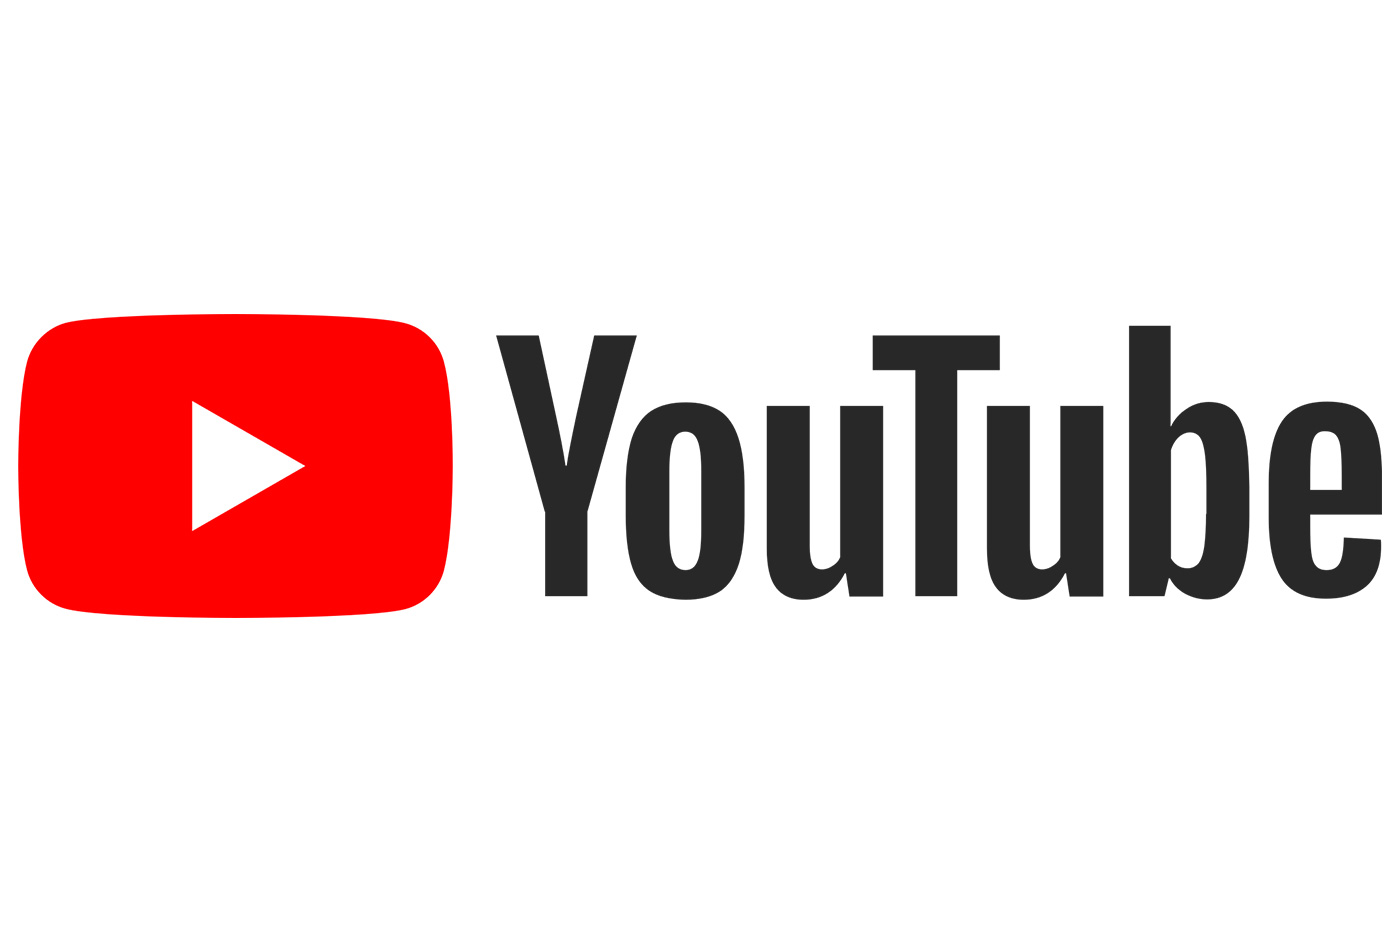 Youtube : fermetures et suppressions de millions de chaînes pour cause d’arnaques